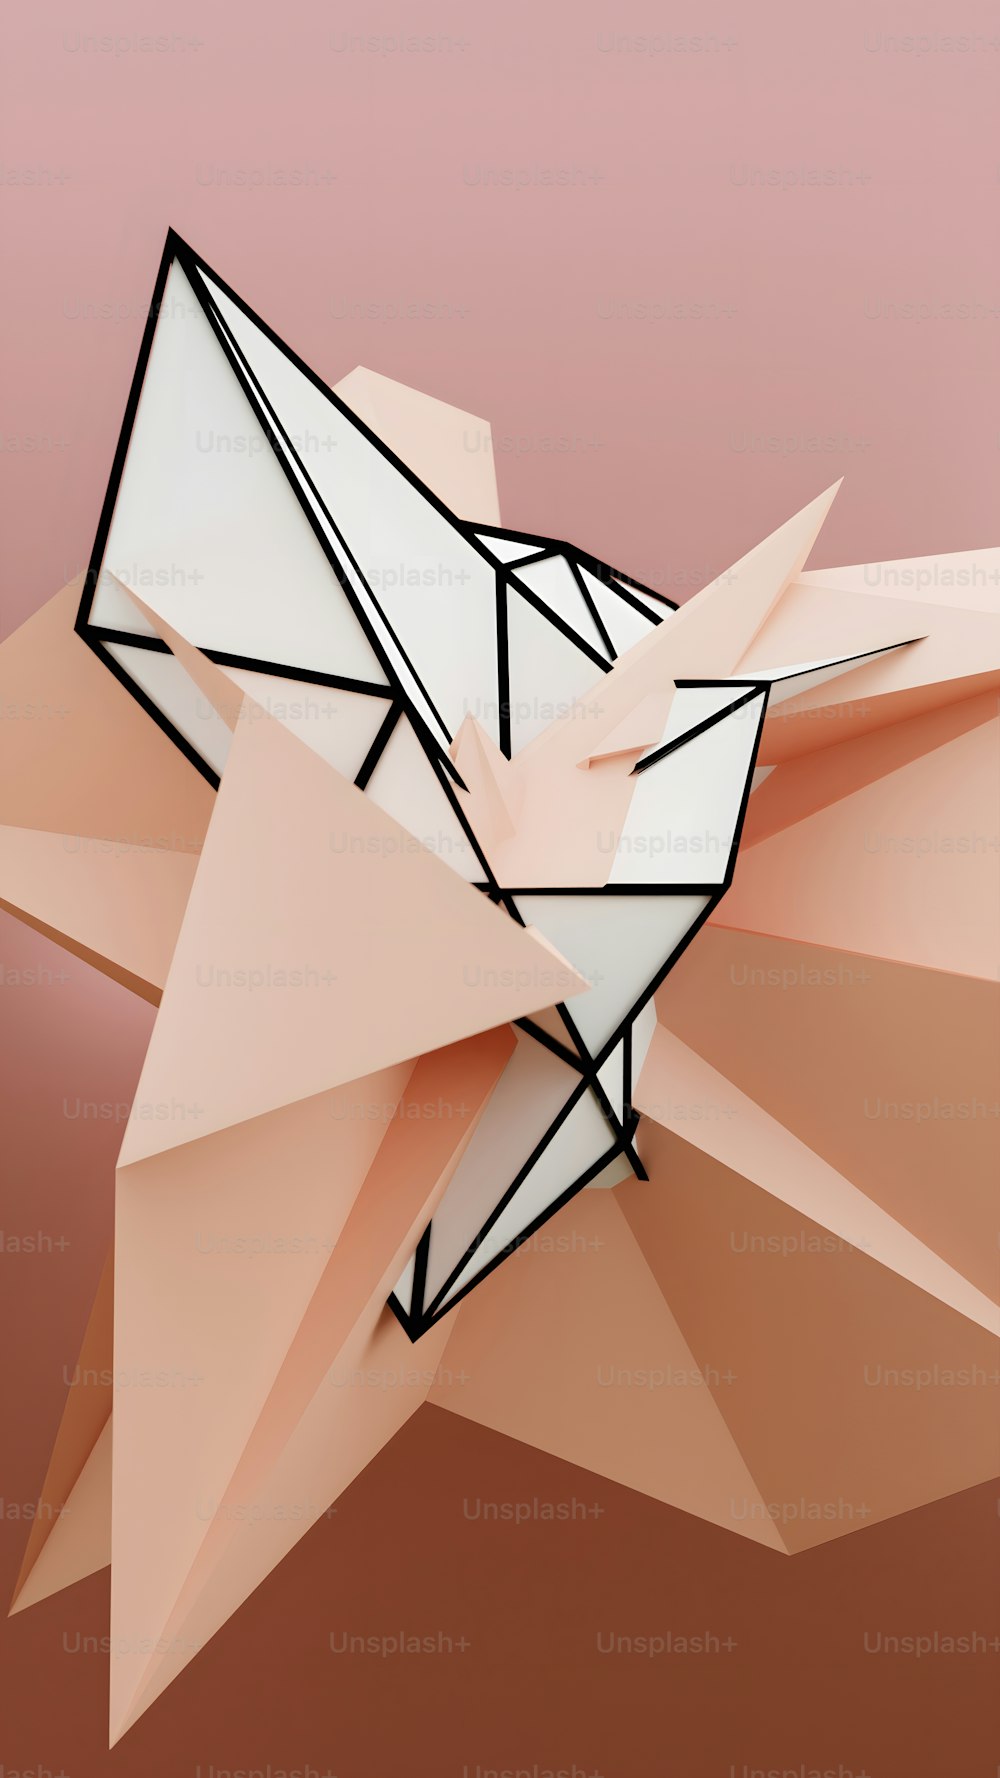 Un oiseau en origami en papier sur fond rose